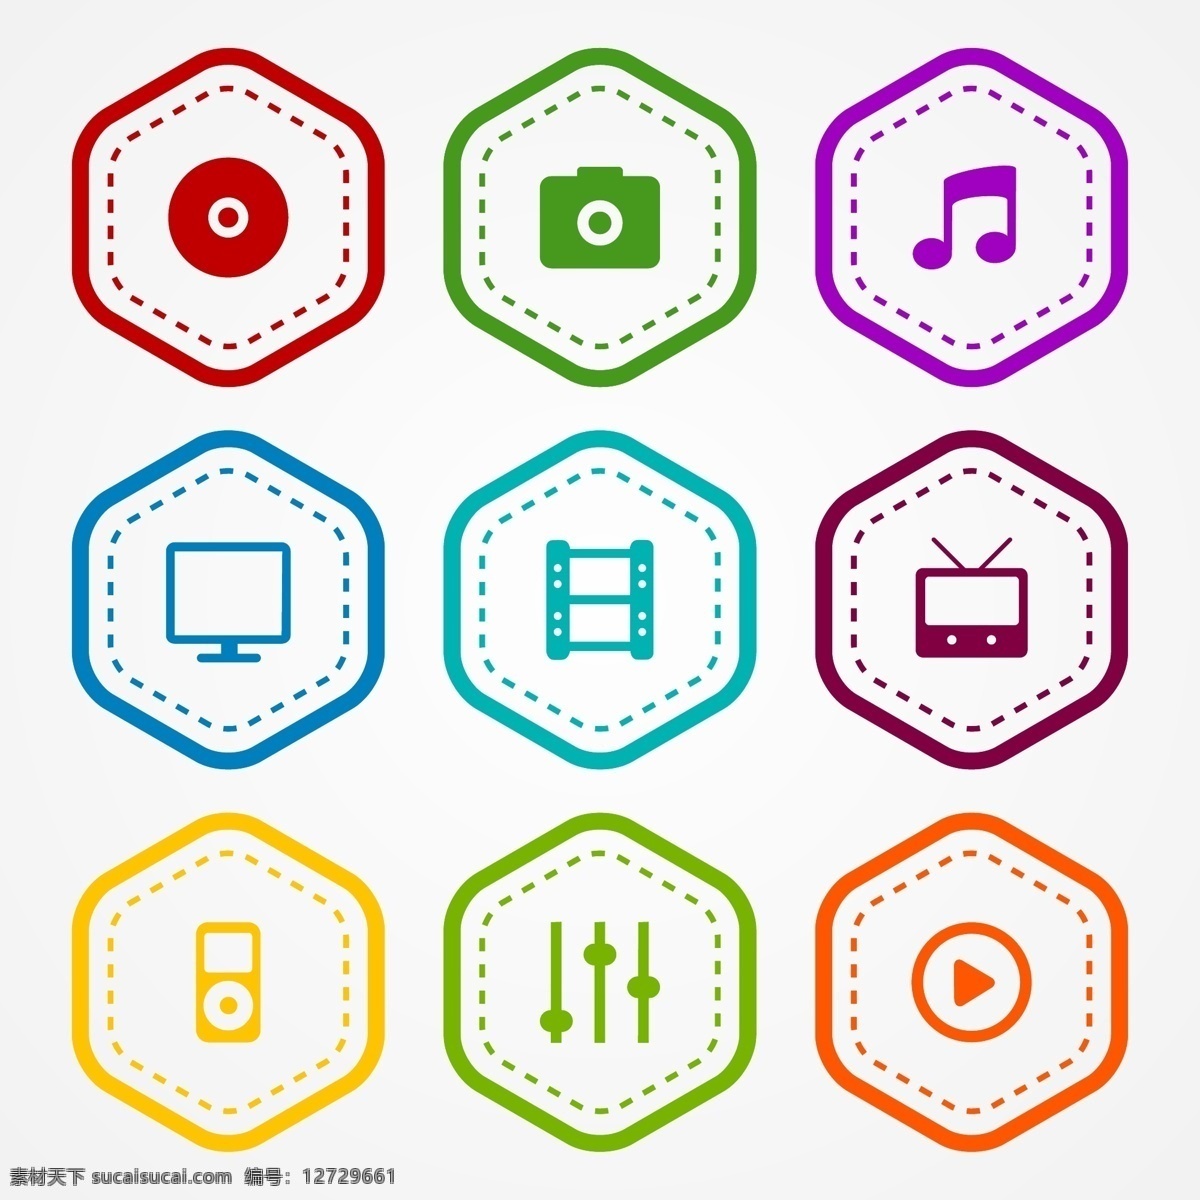 应用程序 图标 徽章 标签 音乐 社交媒体 相机 照片 电影 颜色 电视 视频 笔记 应用 光盘 播放 媒体 音乐笔记 白色